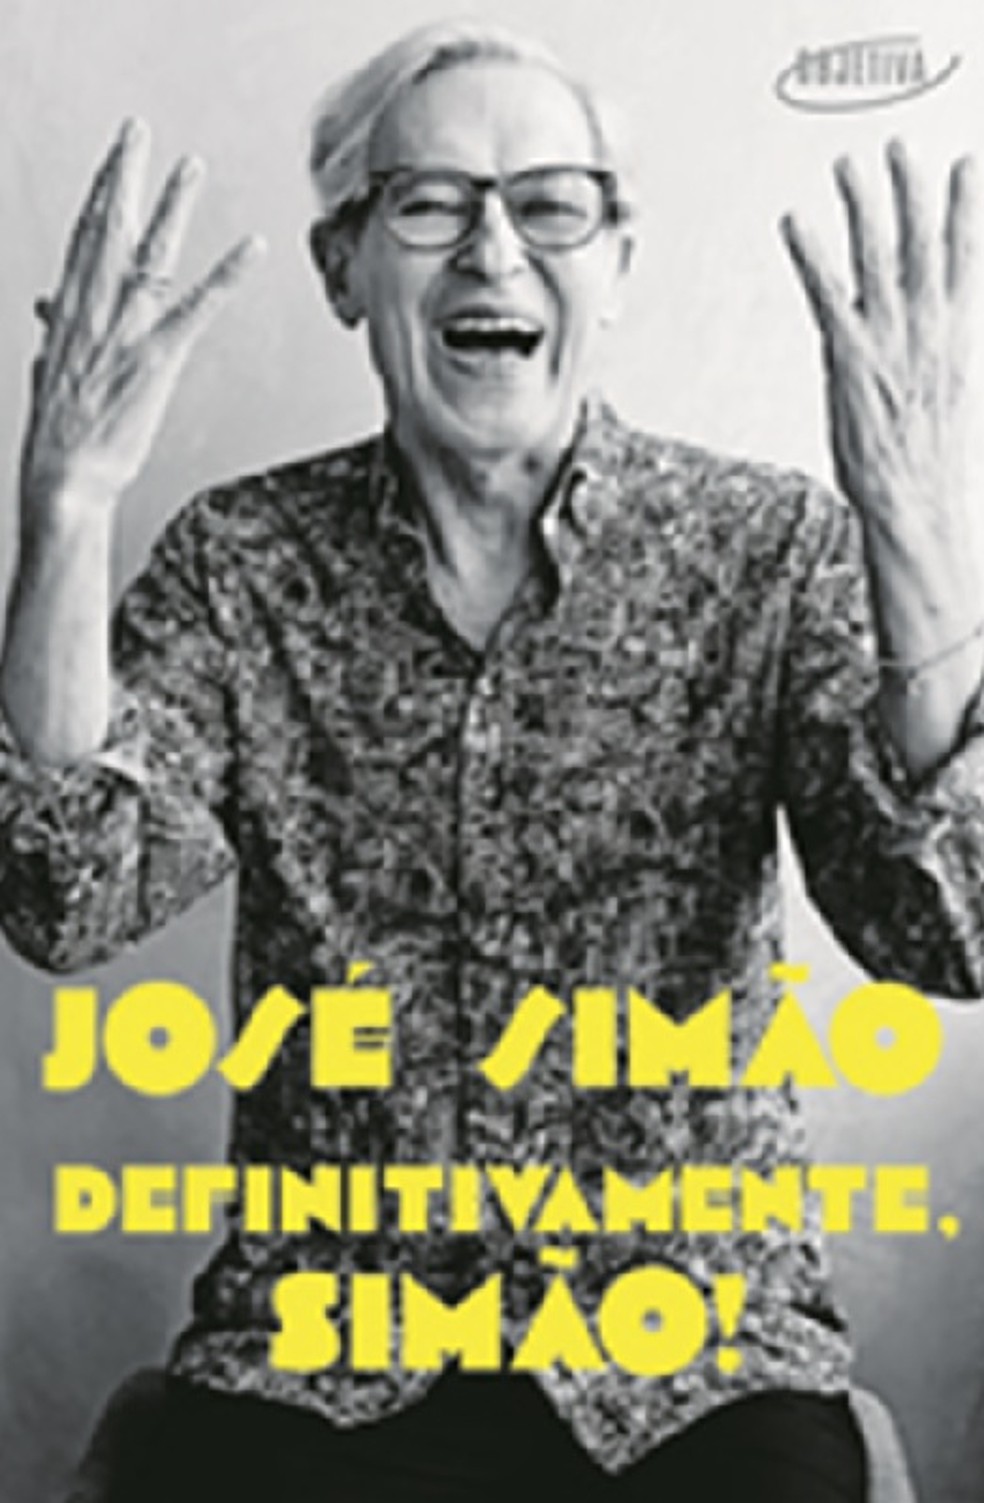 "Definitivamente, Simão!", livro do jornalista José Simão — Foto: Reprodução